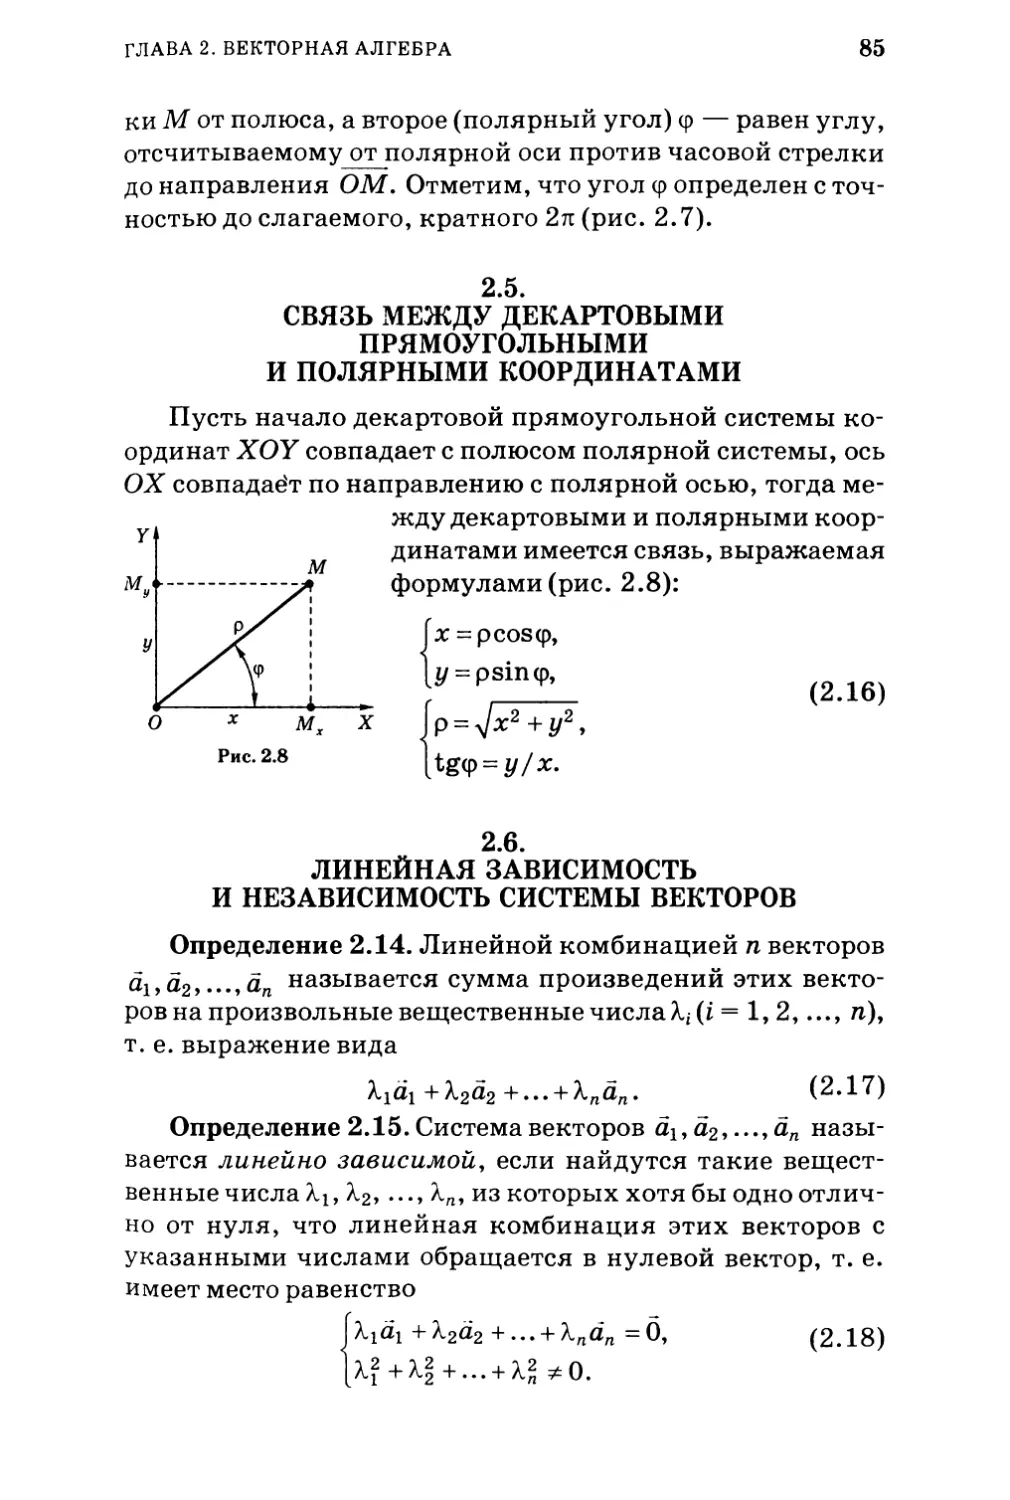 2.5.  Связь между декартовыми прямоугольными и полярными координатами
2.6. Линейная зависимость и независимость системы векторов